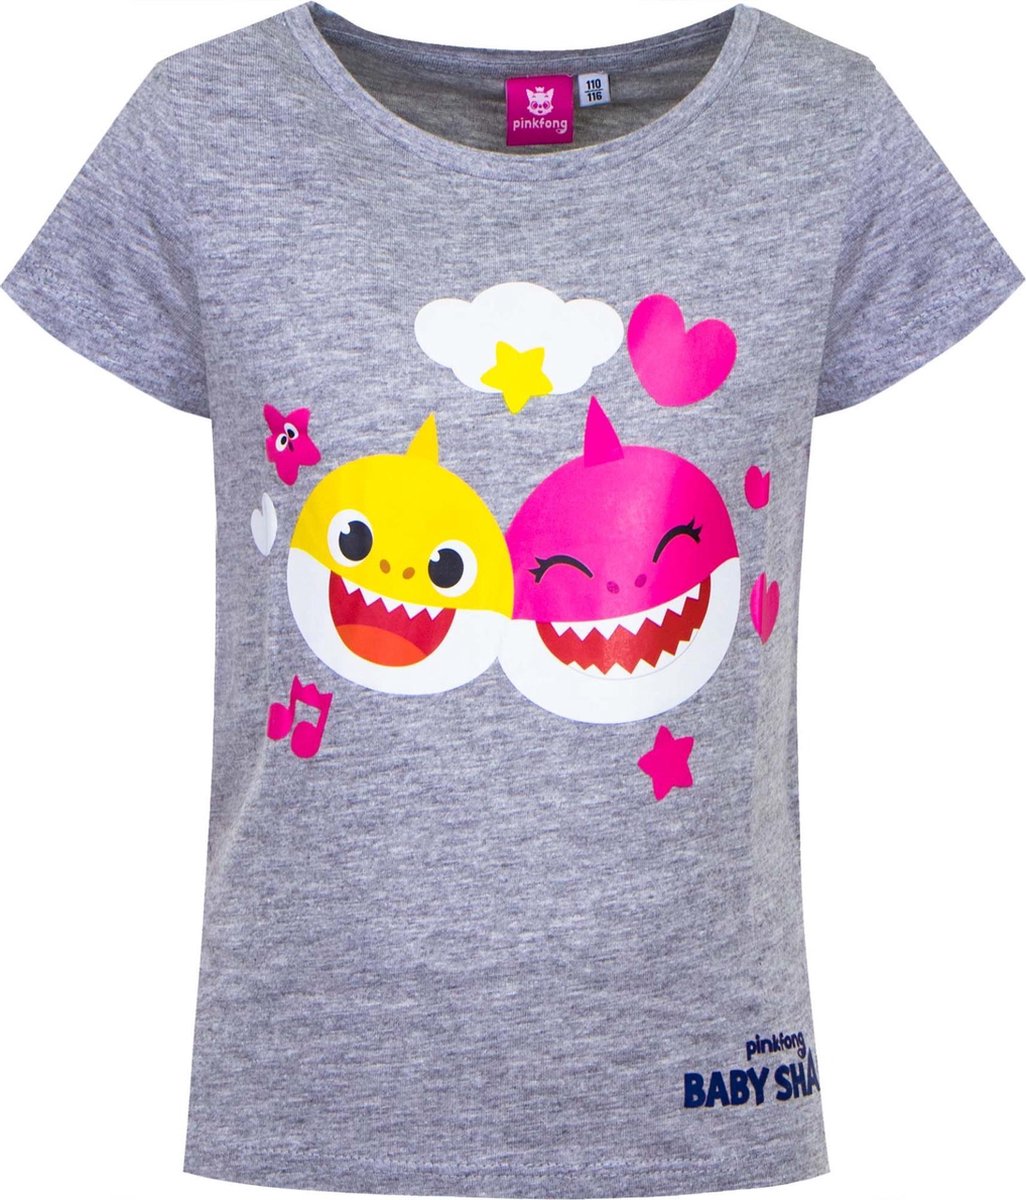 Toddler Baby Shark Shirt Kleding Unisex kinderkleding Tops & T-shirts T-shirts T-shirts met print 